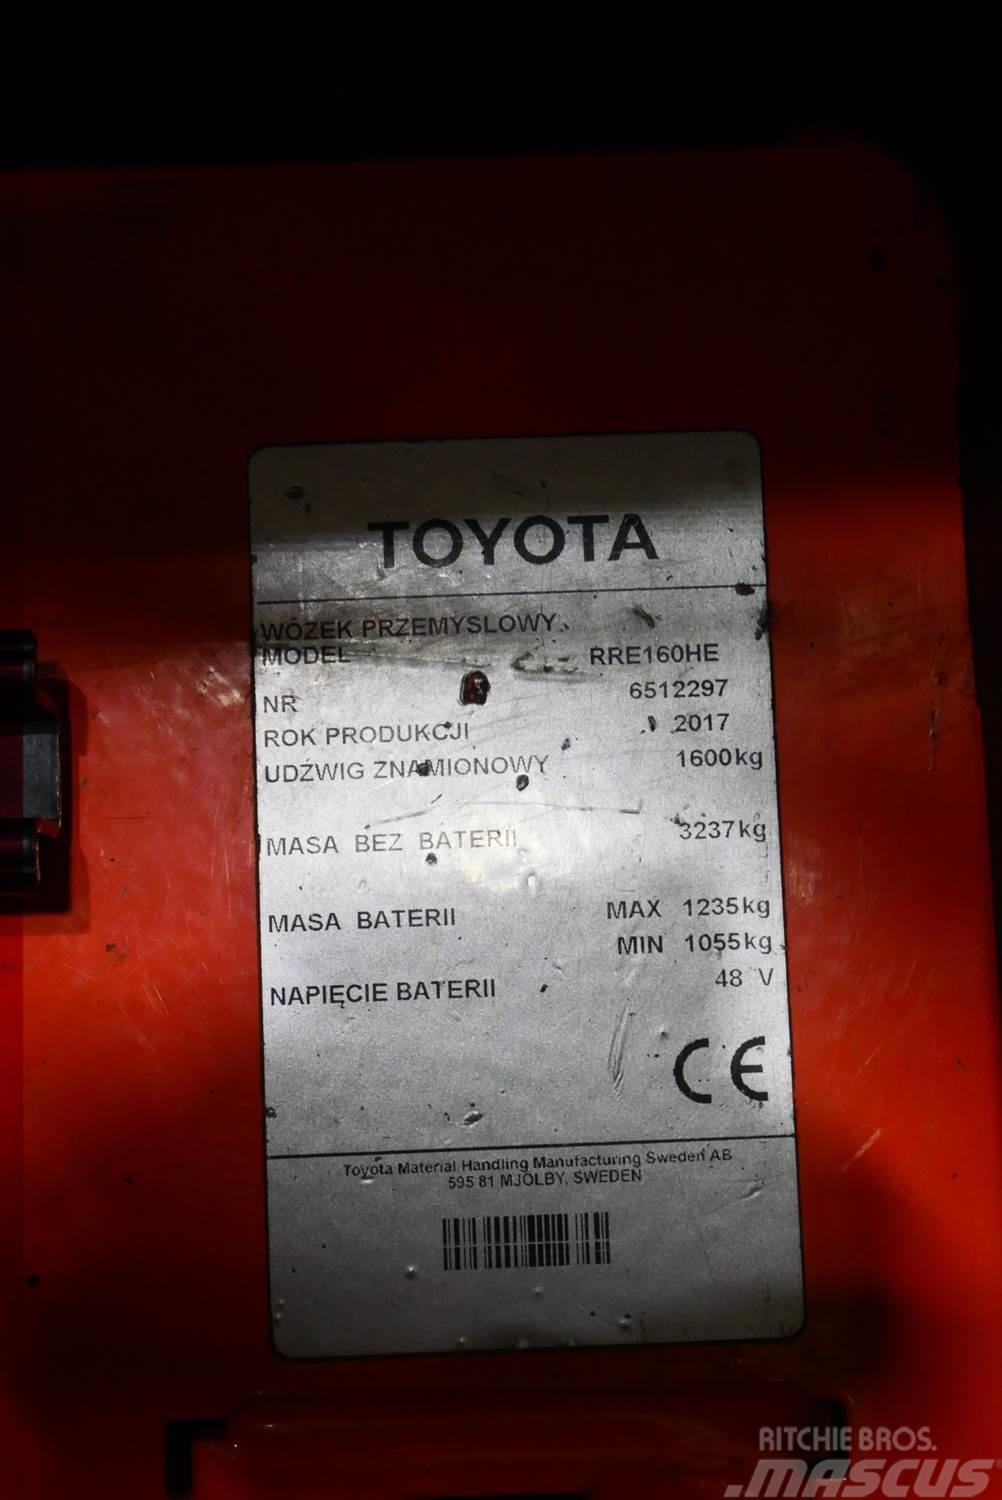 Toyota RRE160HE Skjutstativtruck